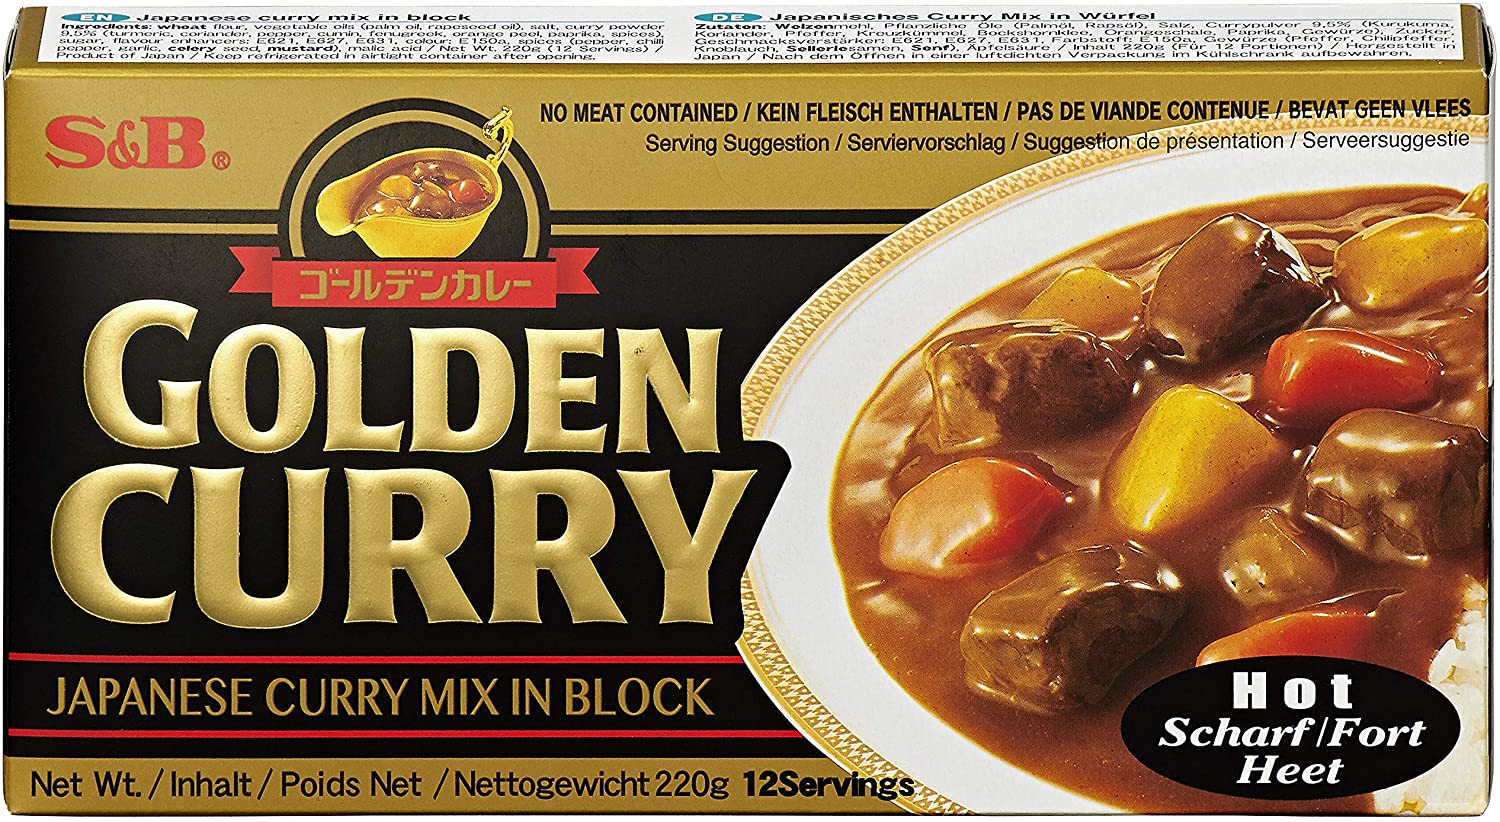 S&B' Golden Curry, Hot, 12 servings, 220g